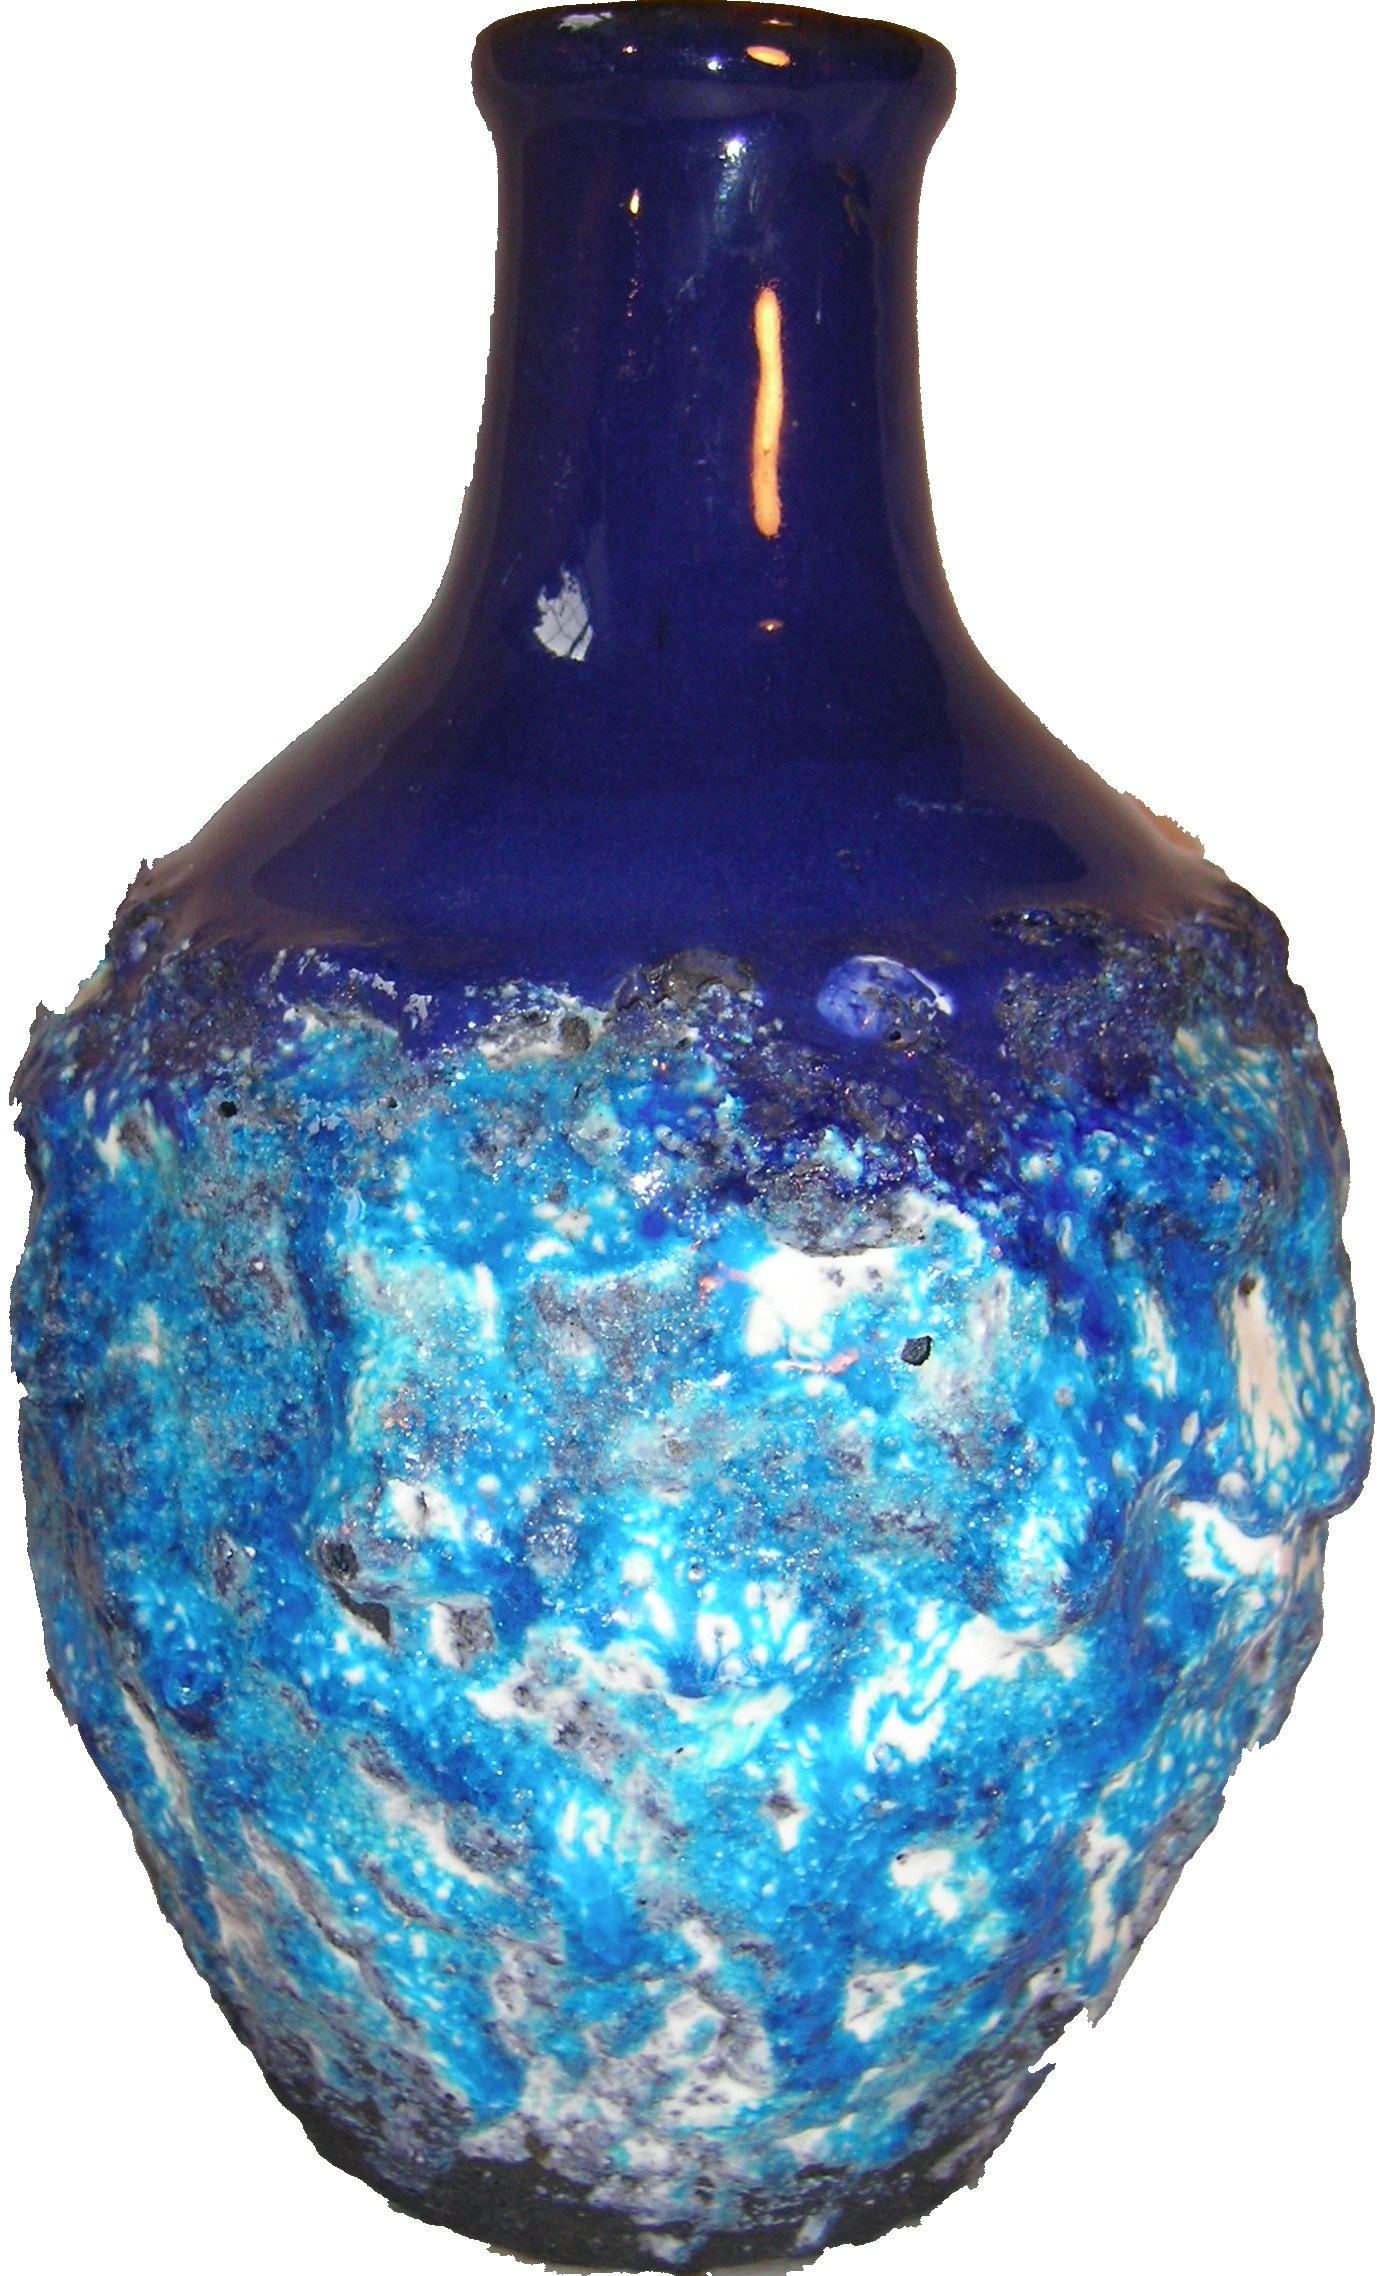 Marei 4100 – Capri Glaze Decor Fat Lava Ceramics Pot vase | Pots